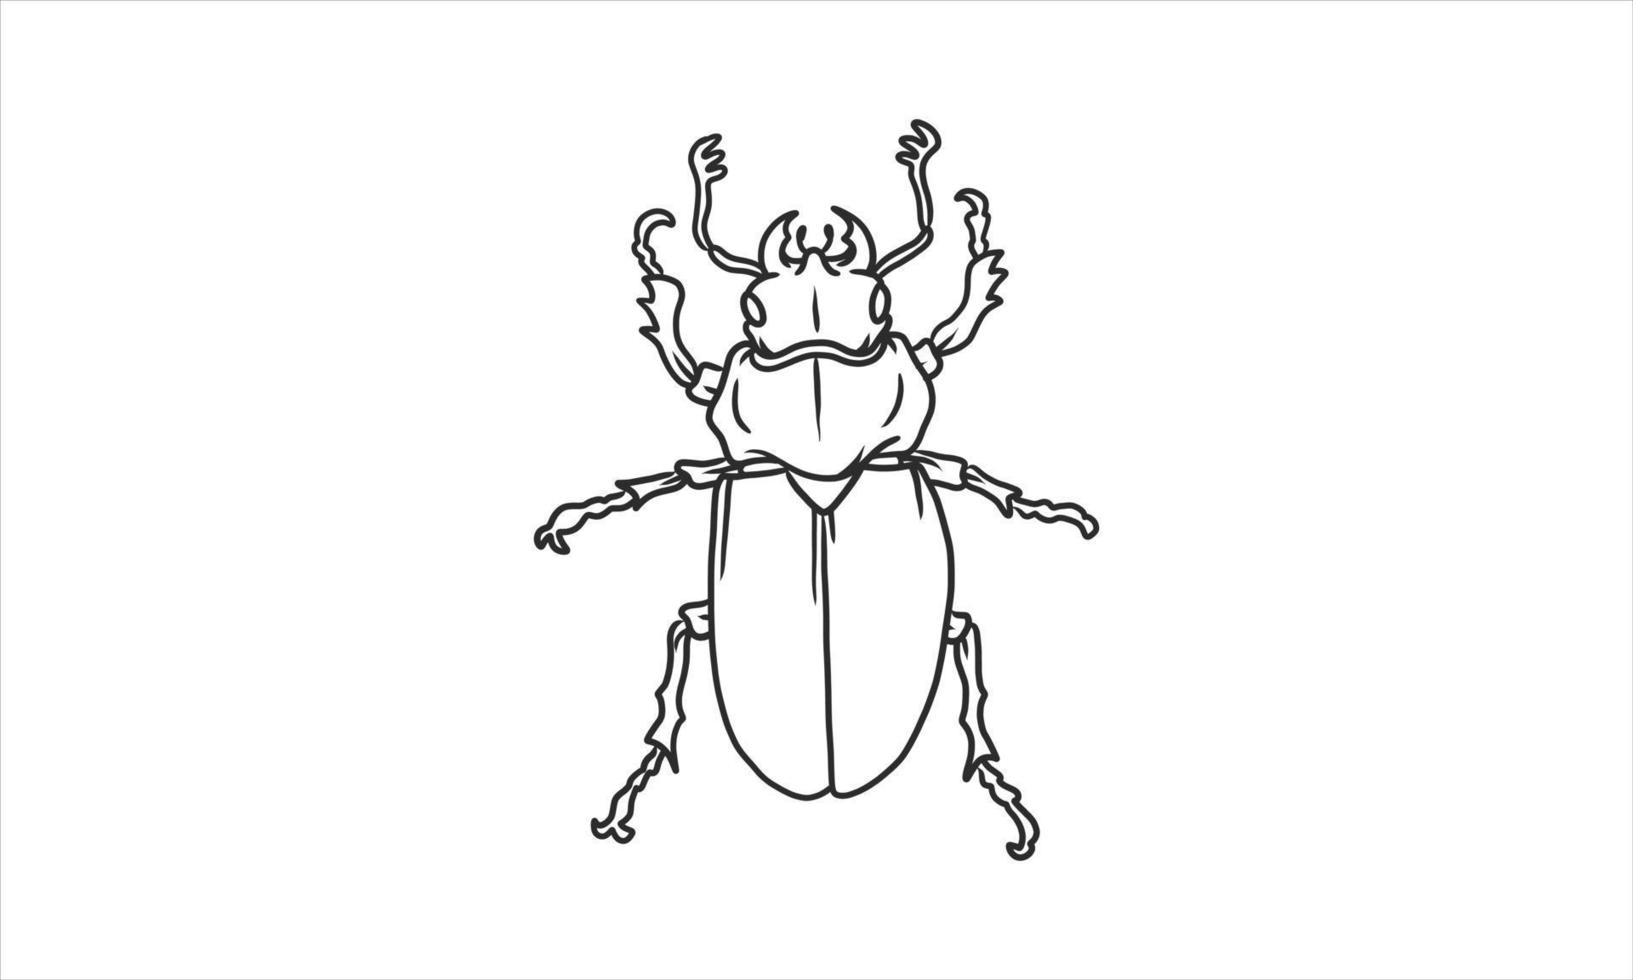 Vektor-Lineart-Illustration von Käfern auf weißem Hintergrund, handgezeichnete japanische Hornkäfer-Bug-Insektenskizze vektor